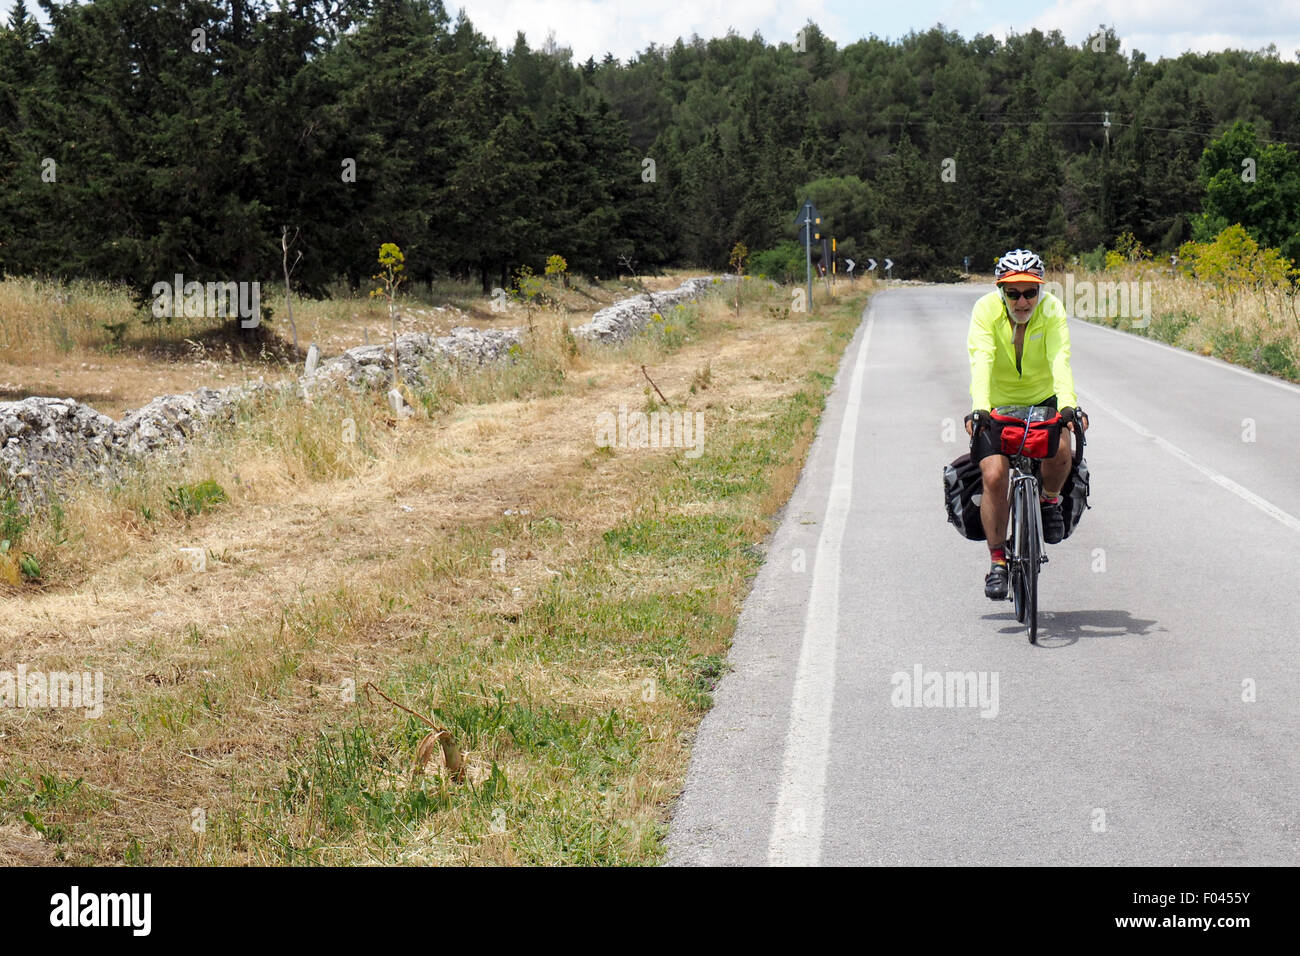 Touren mit dem Fahrrad auf einer Landstraße entlang einer niedrigen Steinmauer Radfahrer Stockfoto